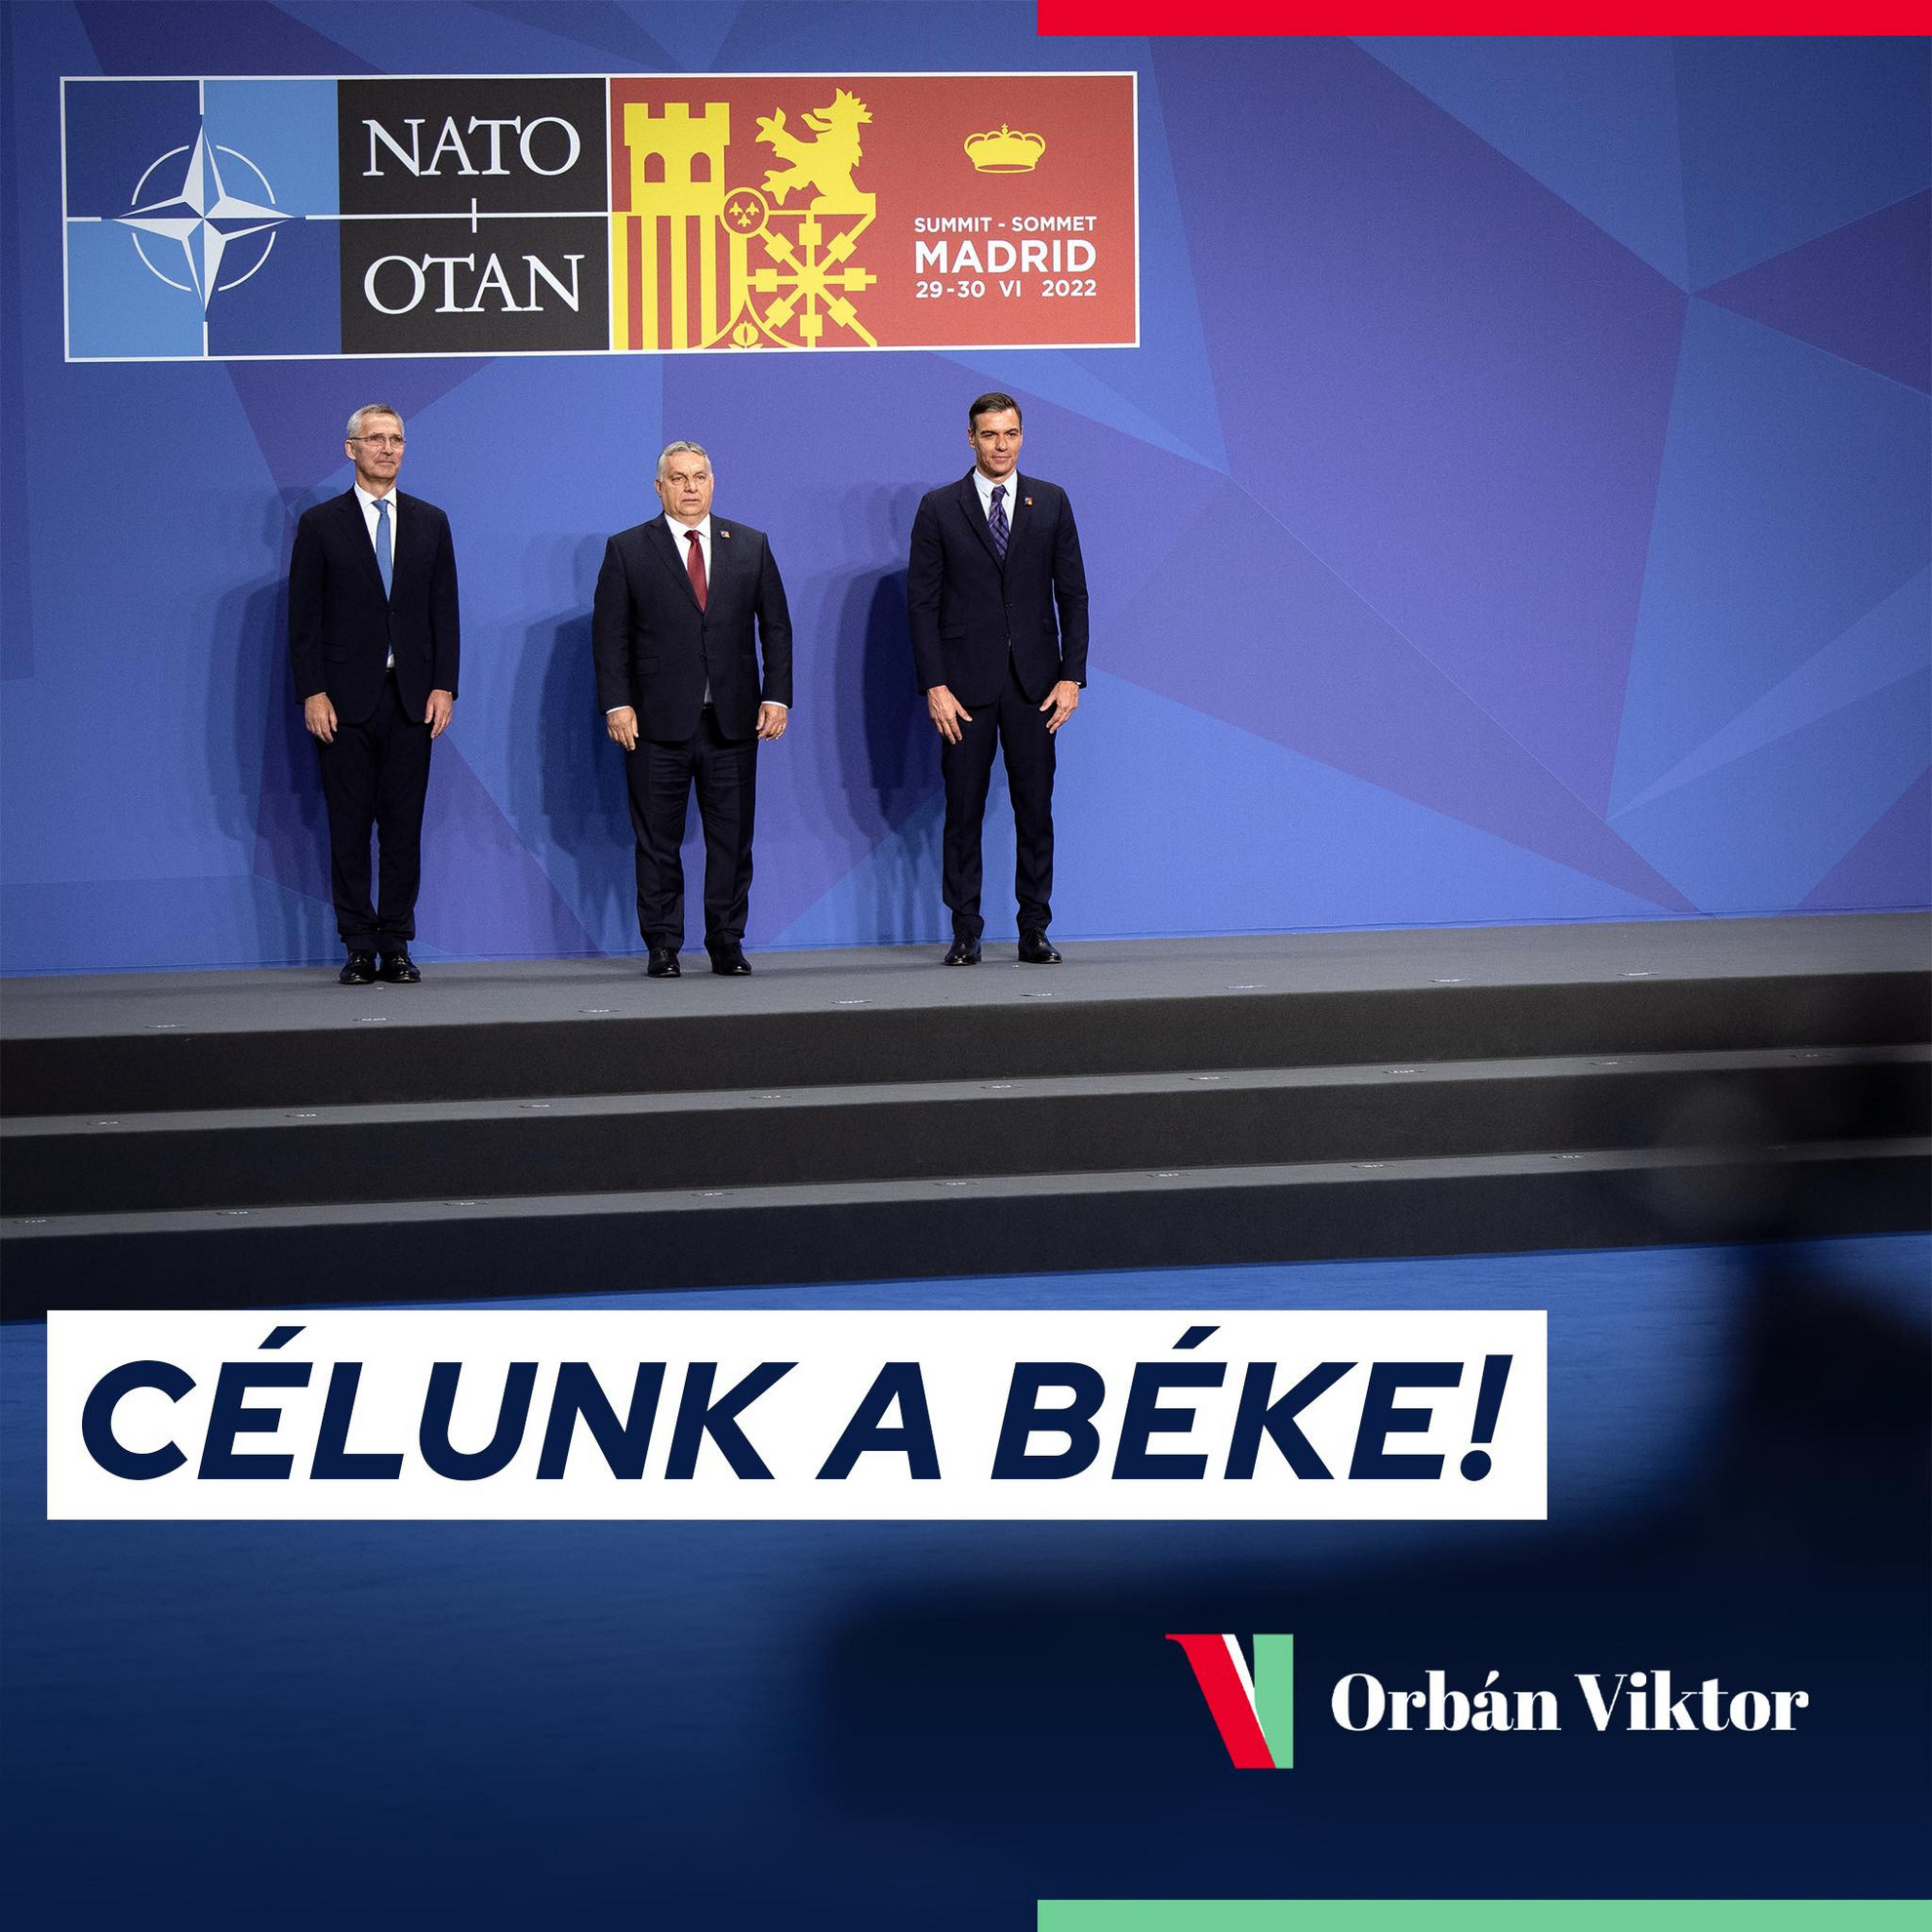 Célunk a béke - írta bejegyzésében Orbán Viktor